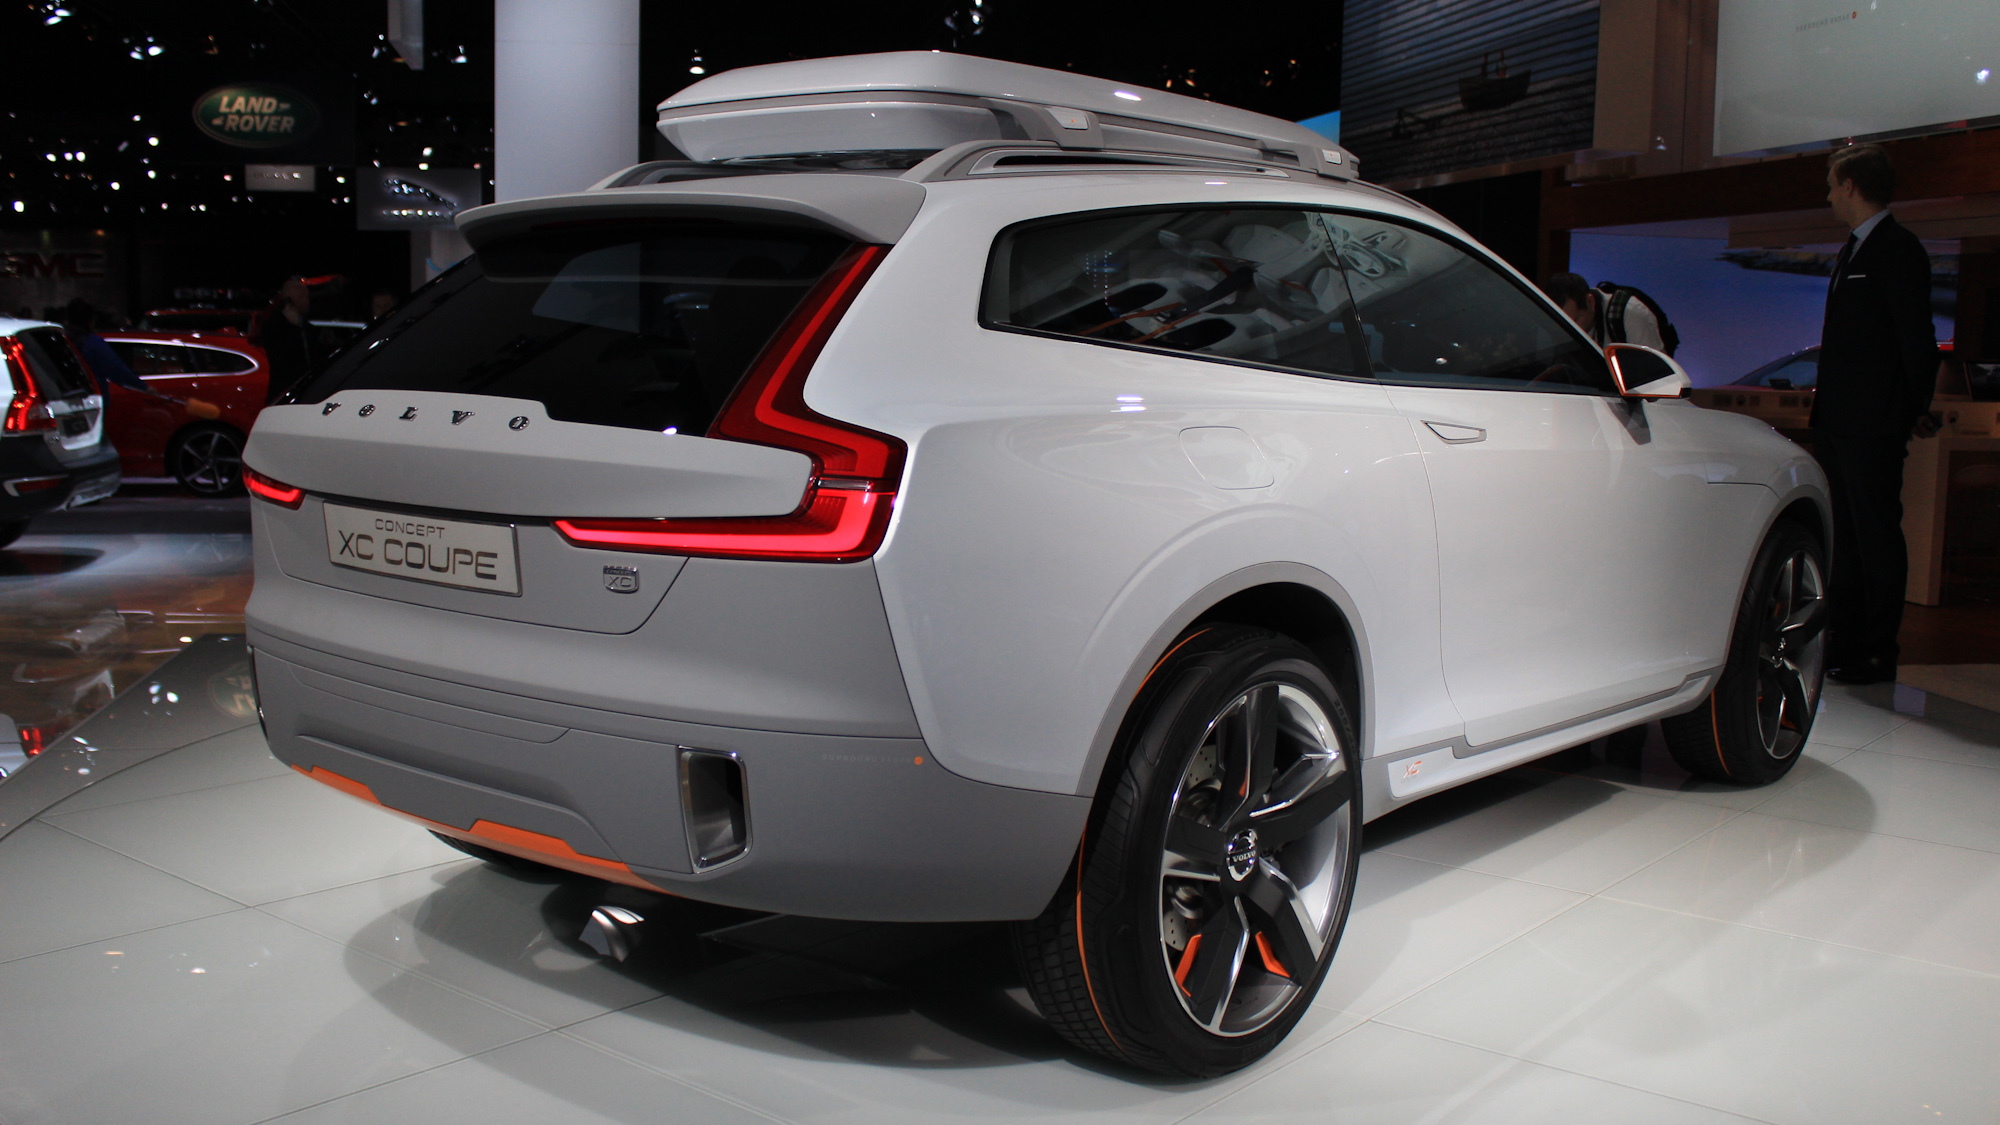 Volvo Concept XC Coupe live photos, 2014 Detroit Auto Show